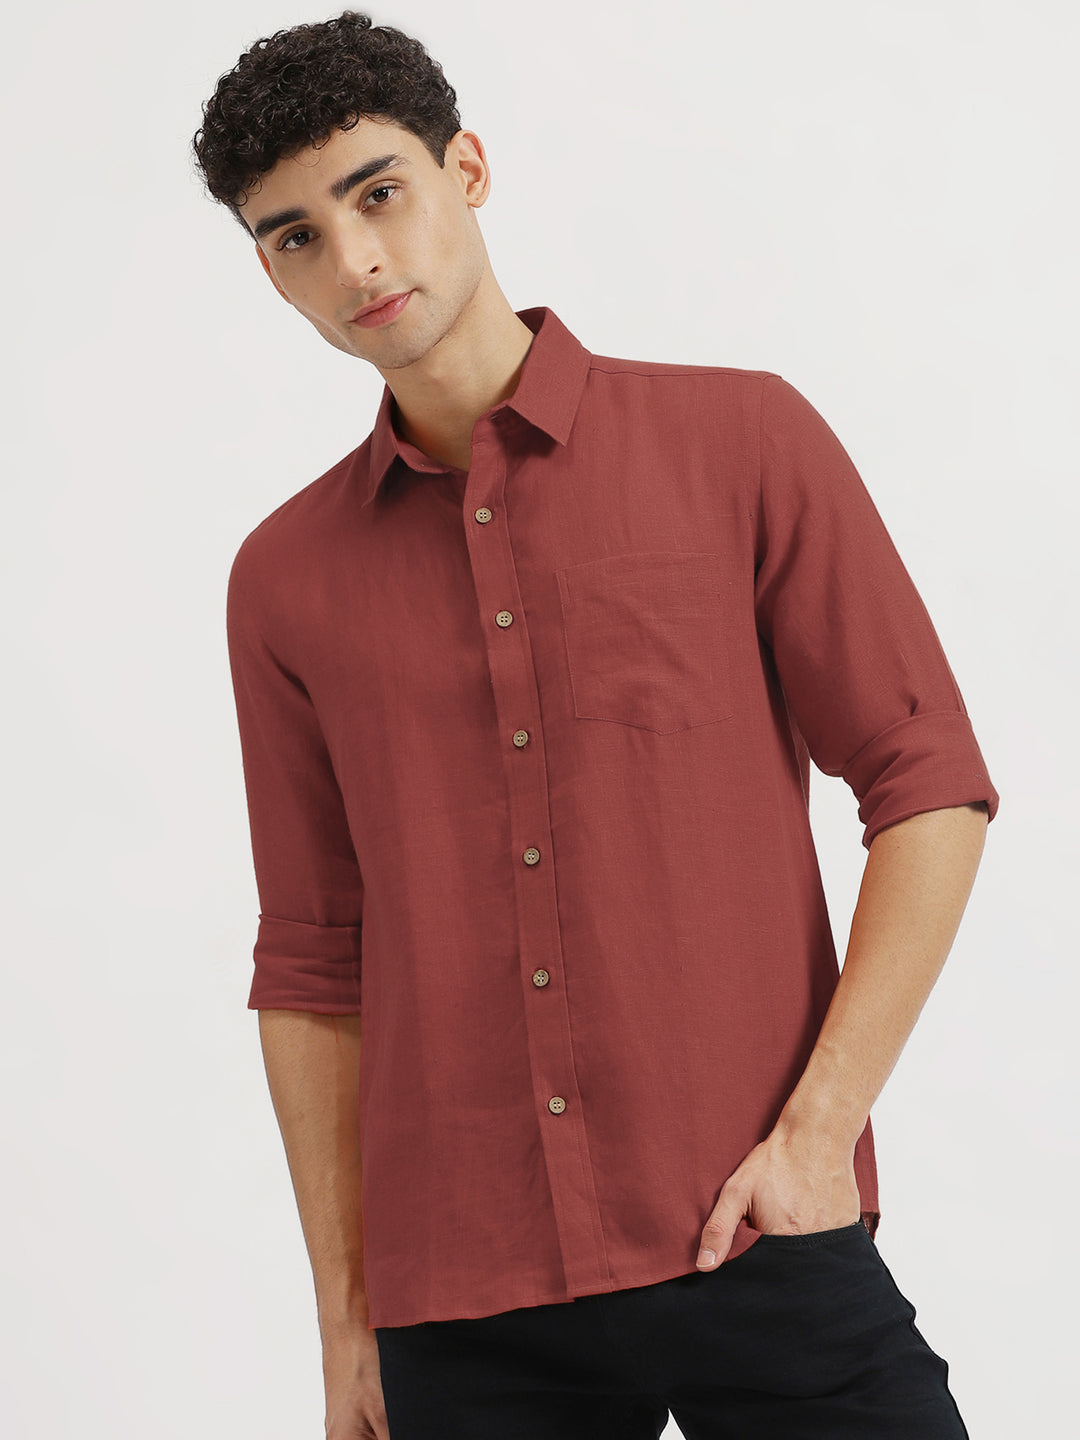 Harvey - Pure Linen Full Sleeve Shirt - Terracotta Red